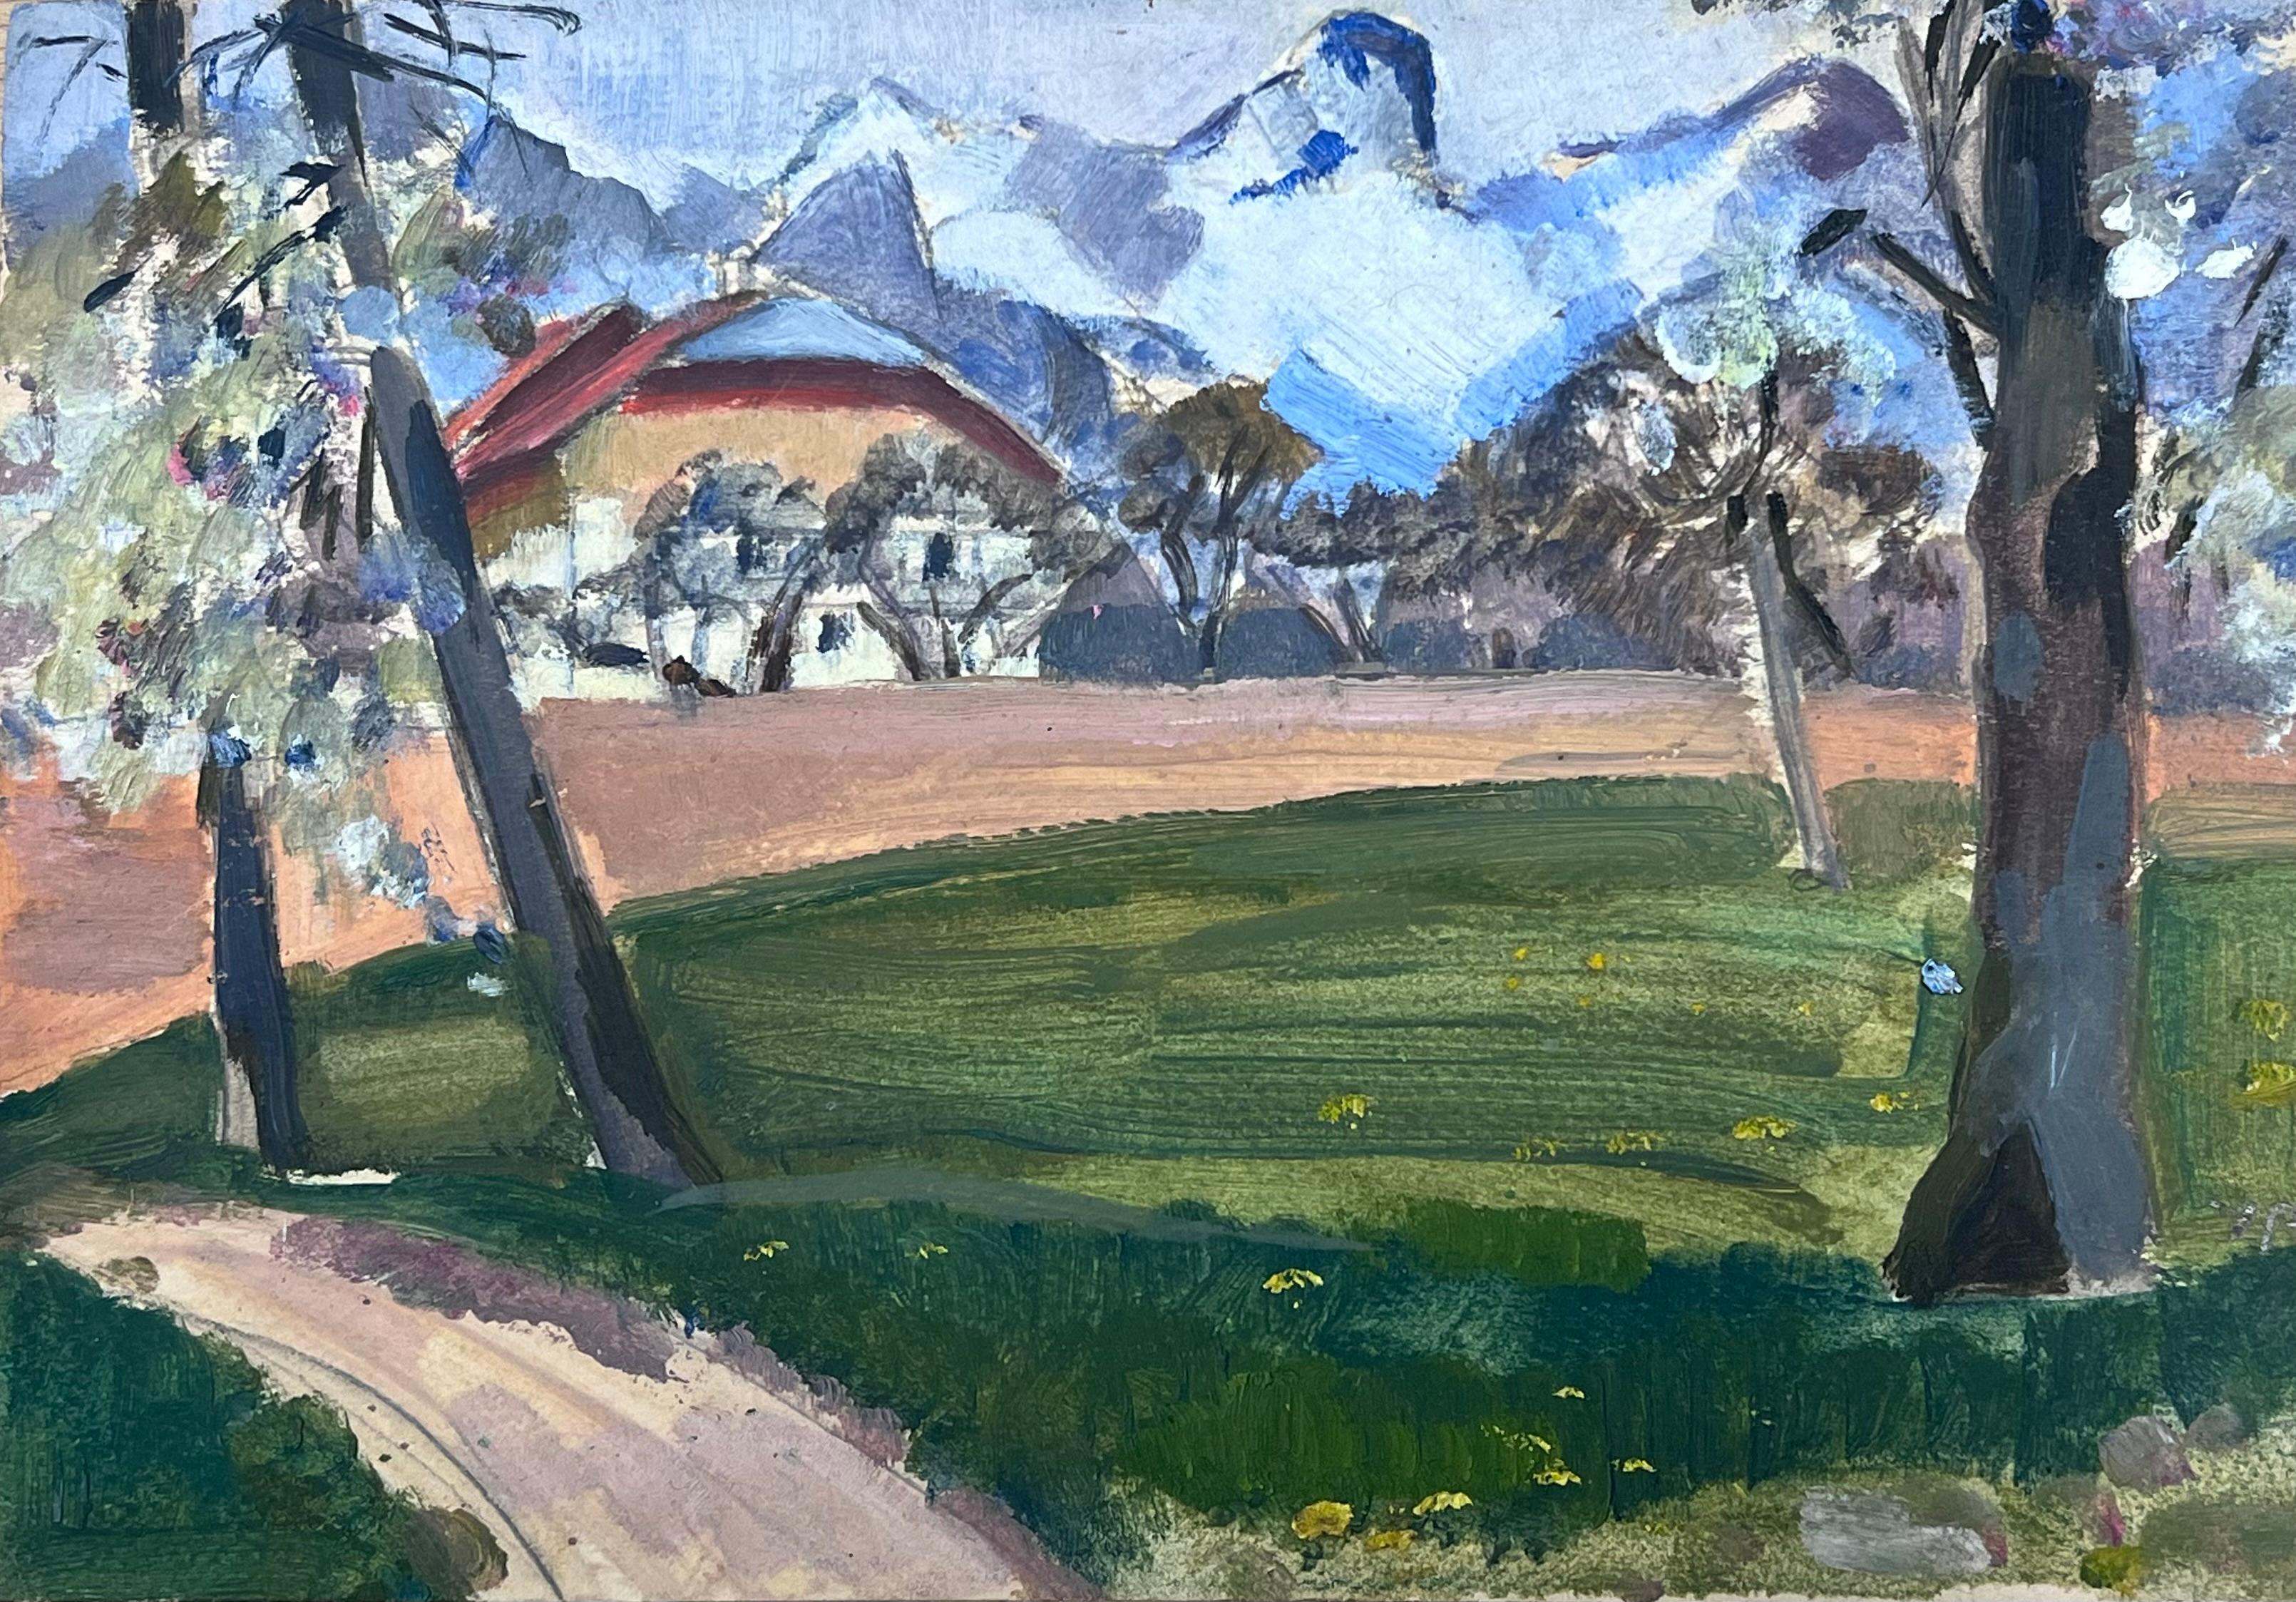 Landscape Painting Y. Blanchon - Peinture à la gouache des années 1930 - Montagnes blanches dans un paysage de terrain vert